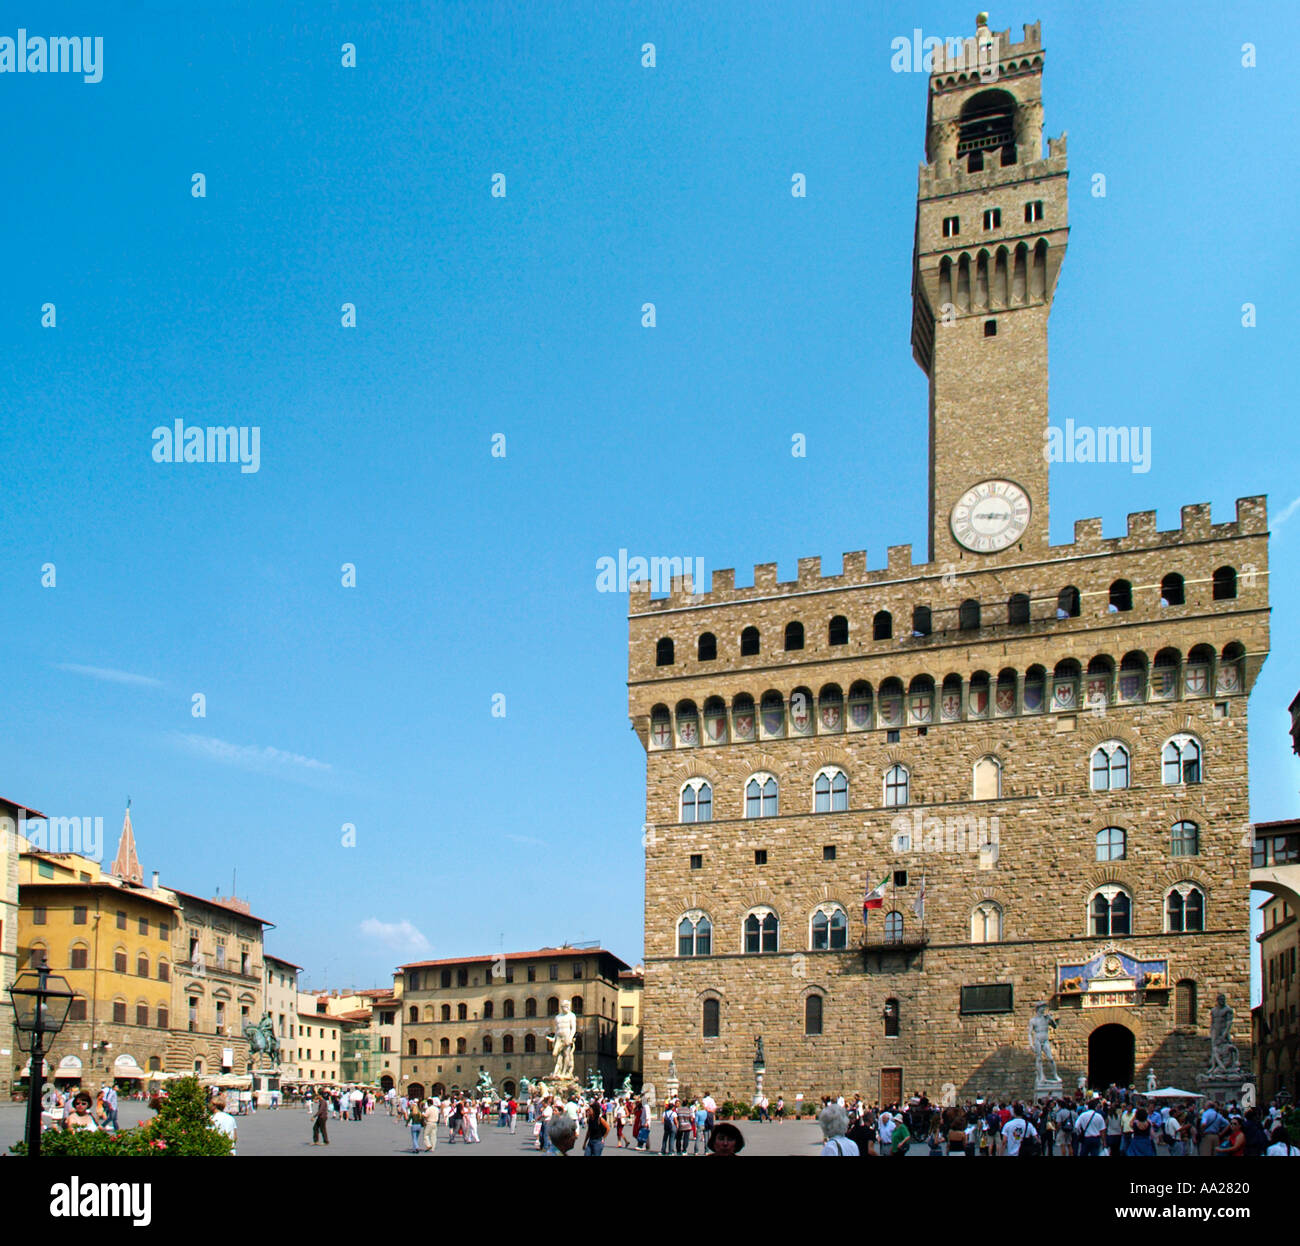 Palazzo Vecchio in the Piazza della Signoria, Florence, Tuscany, Italy Stock Photo